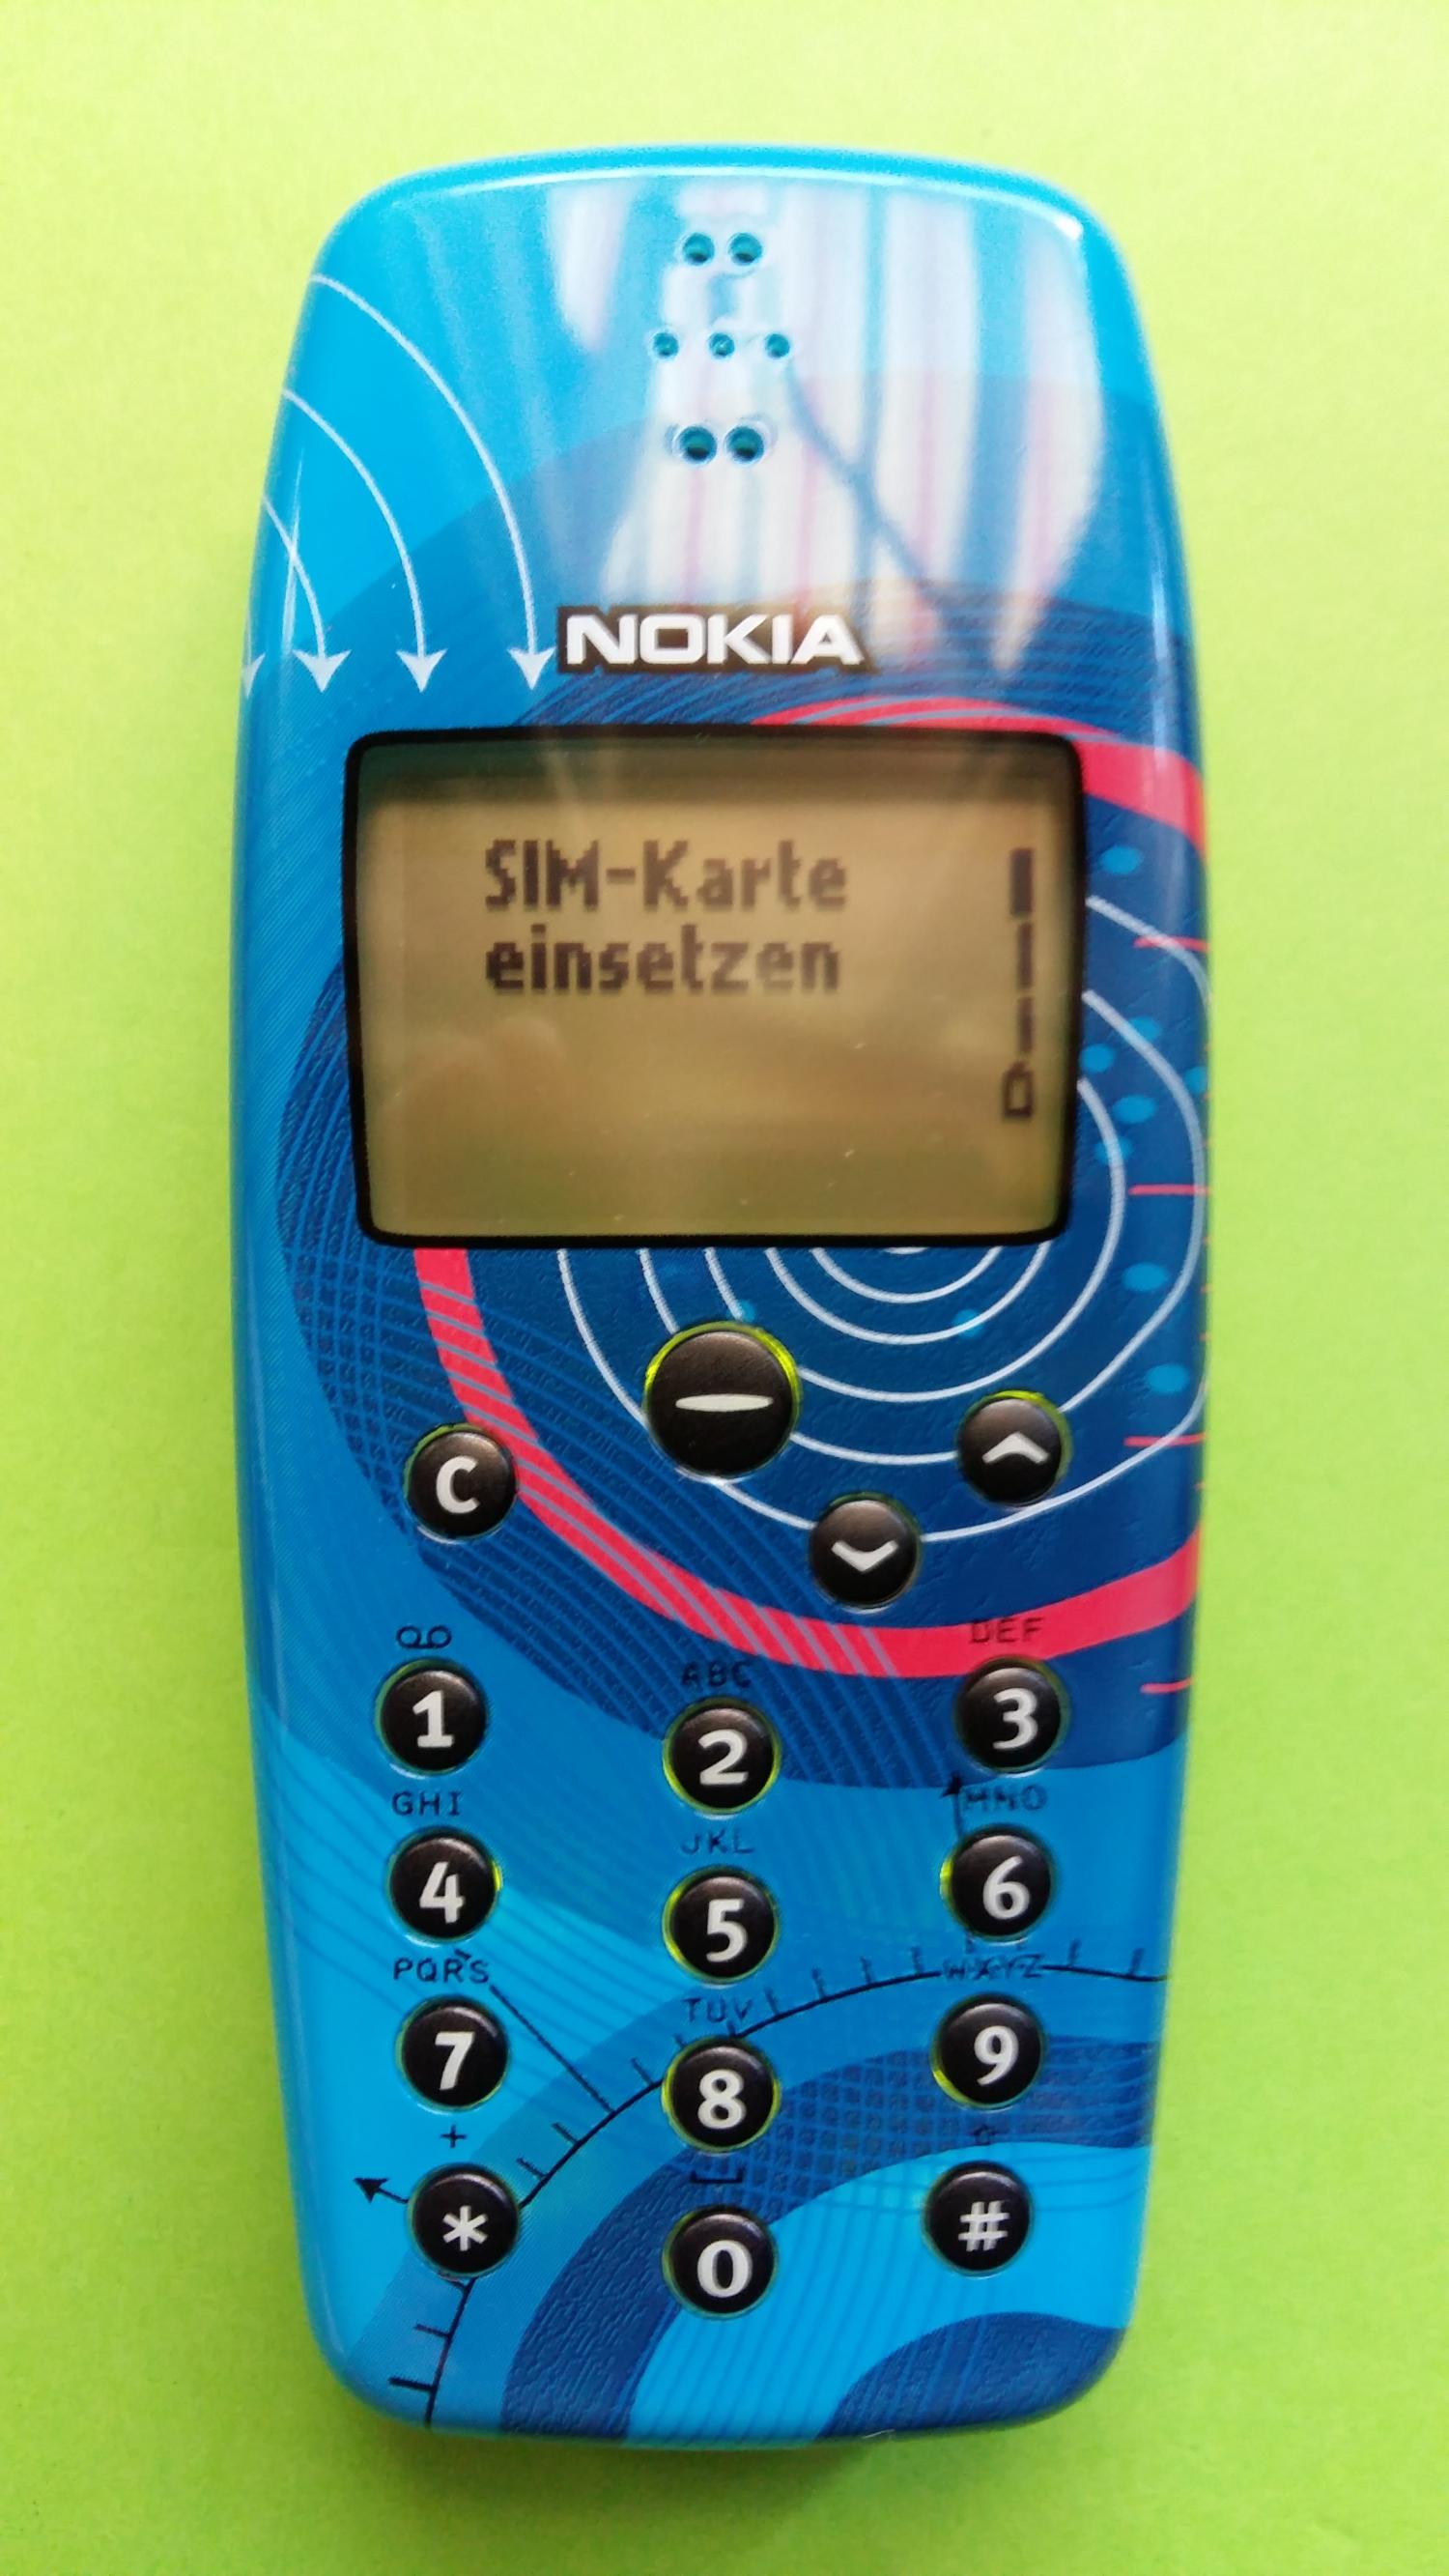 image-7313217-Nokia 3330 (5)1.jpg